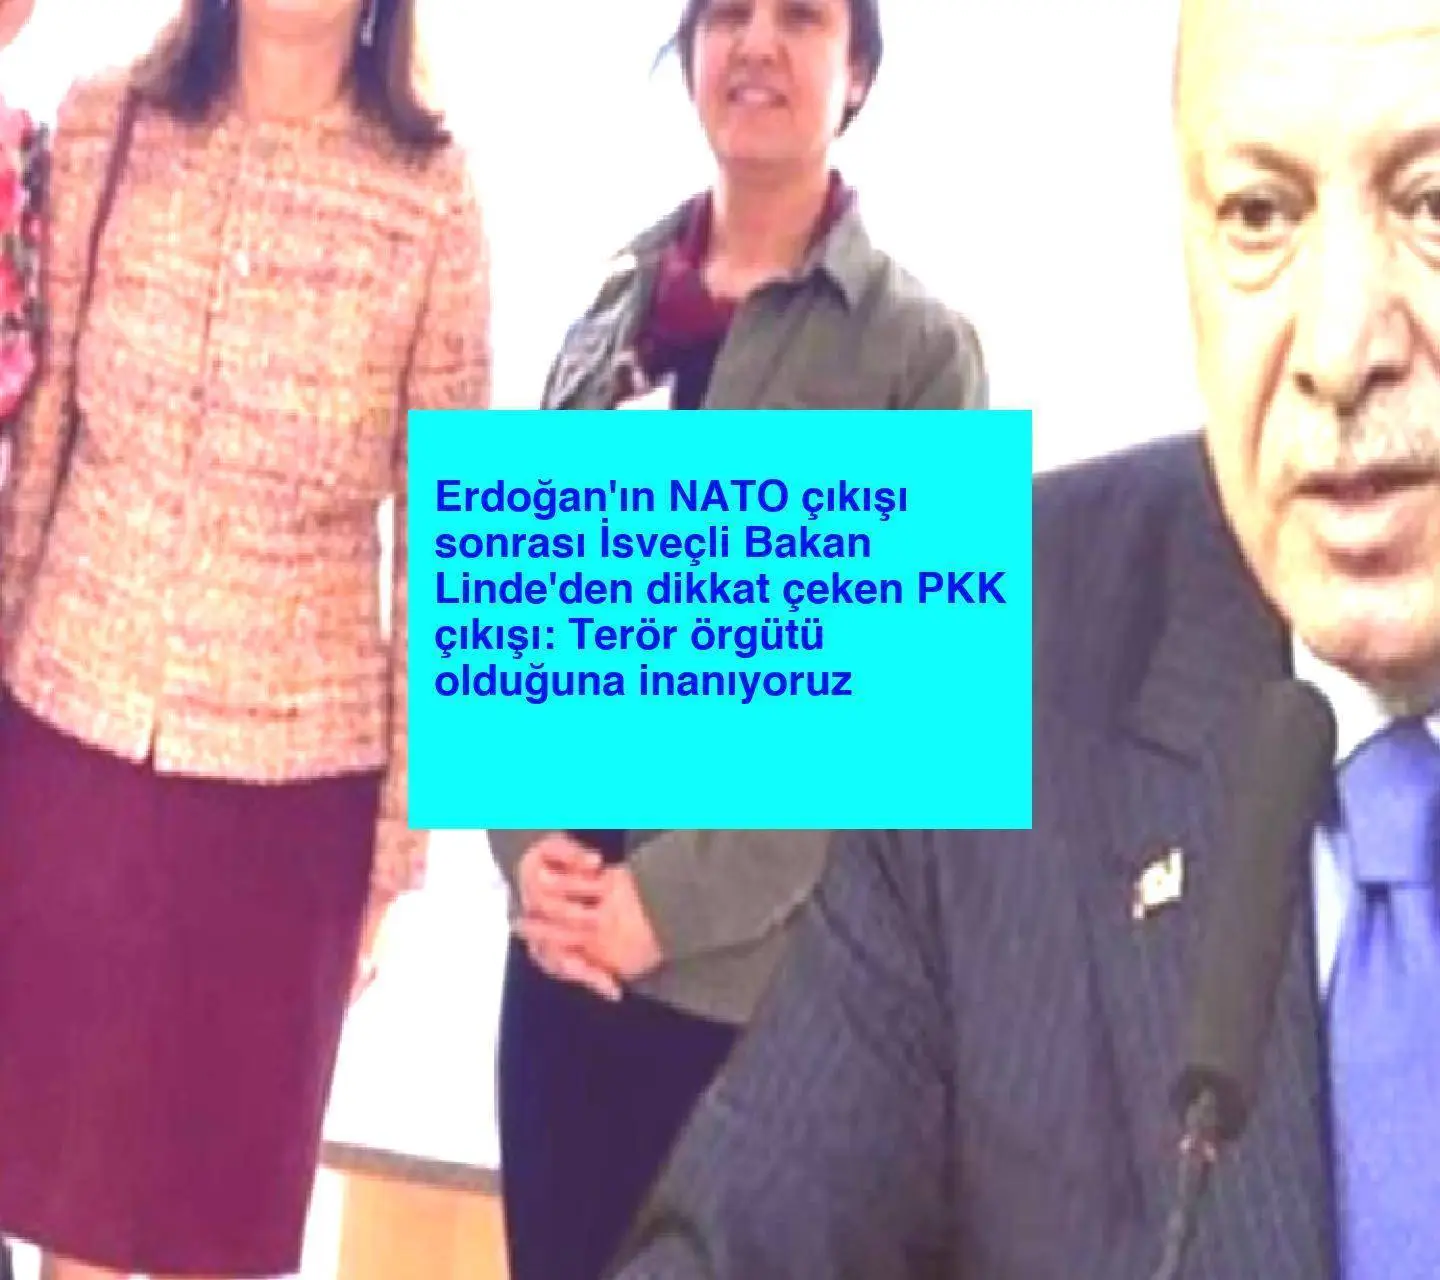 Erdoğan’ın NATO çıkışı sonrası İsveçli Bakan Linde’den dikkat çeken PKK çıkışı: Terör örgütü olduğuna inanıyoruz